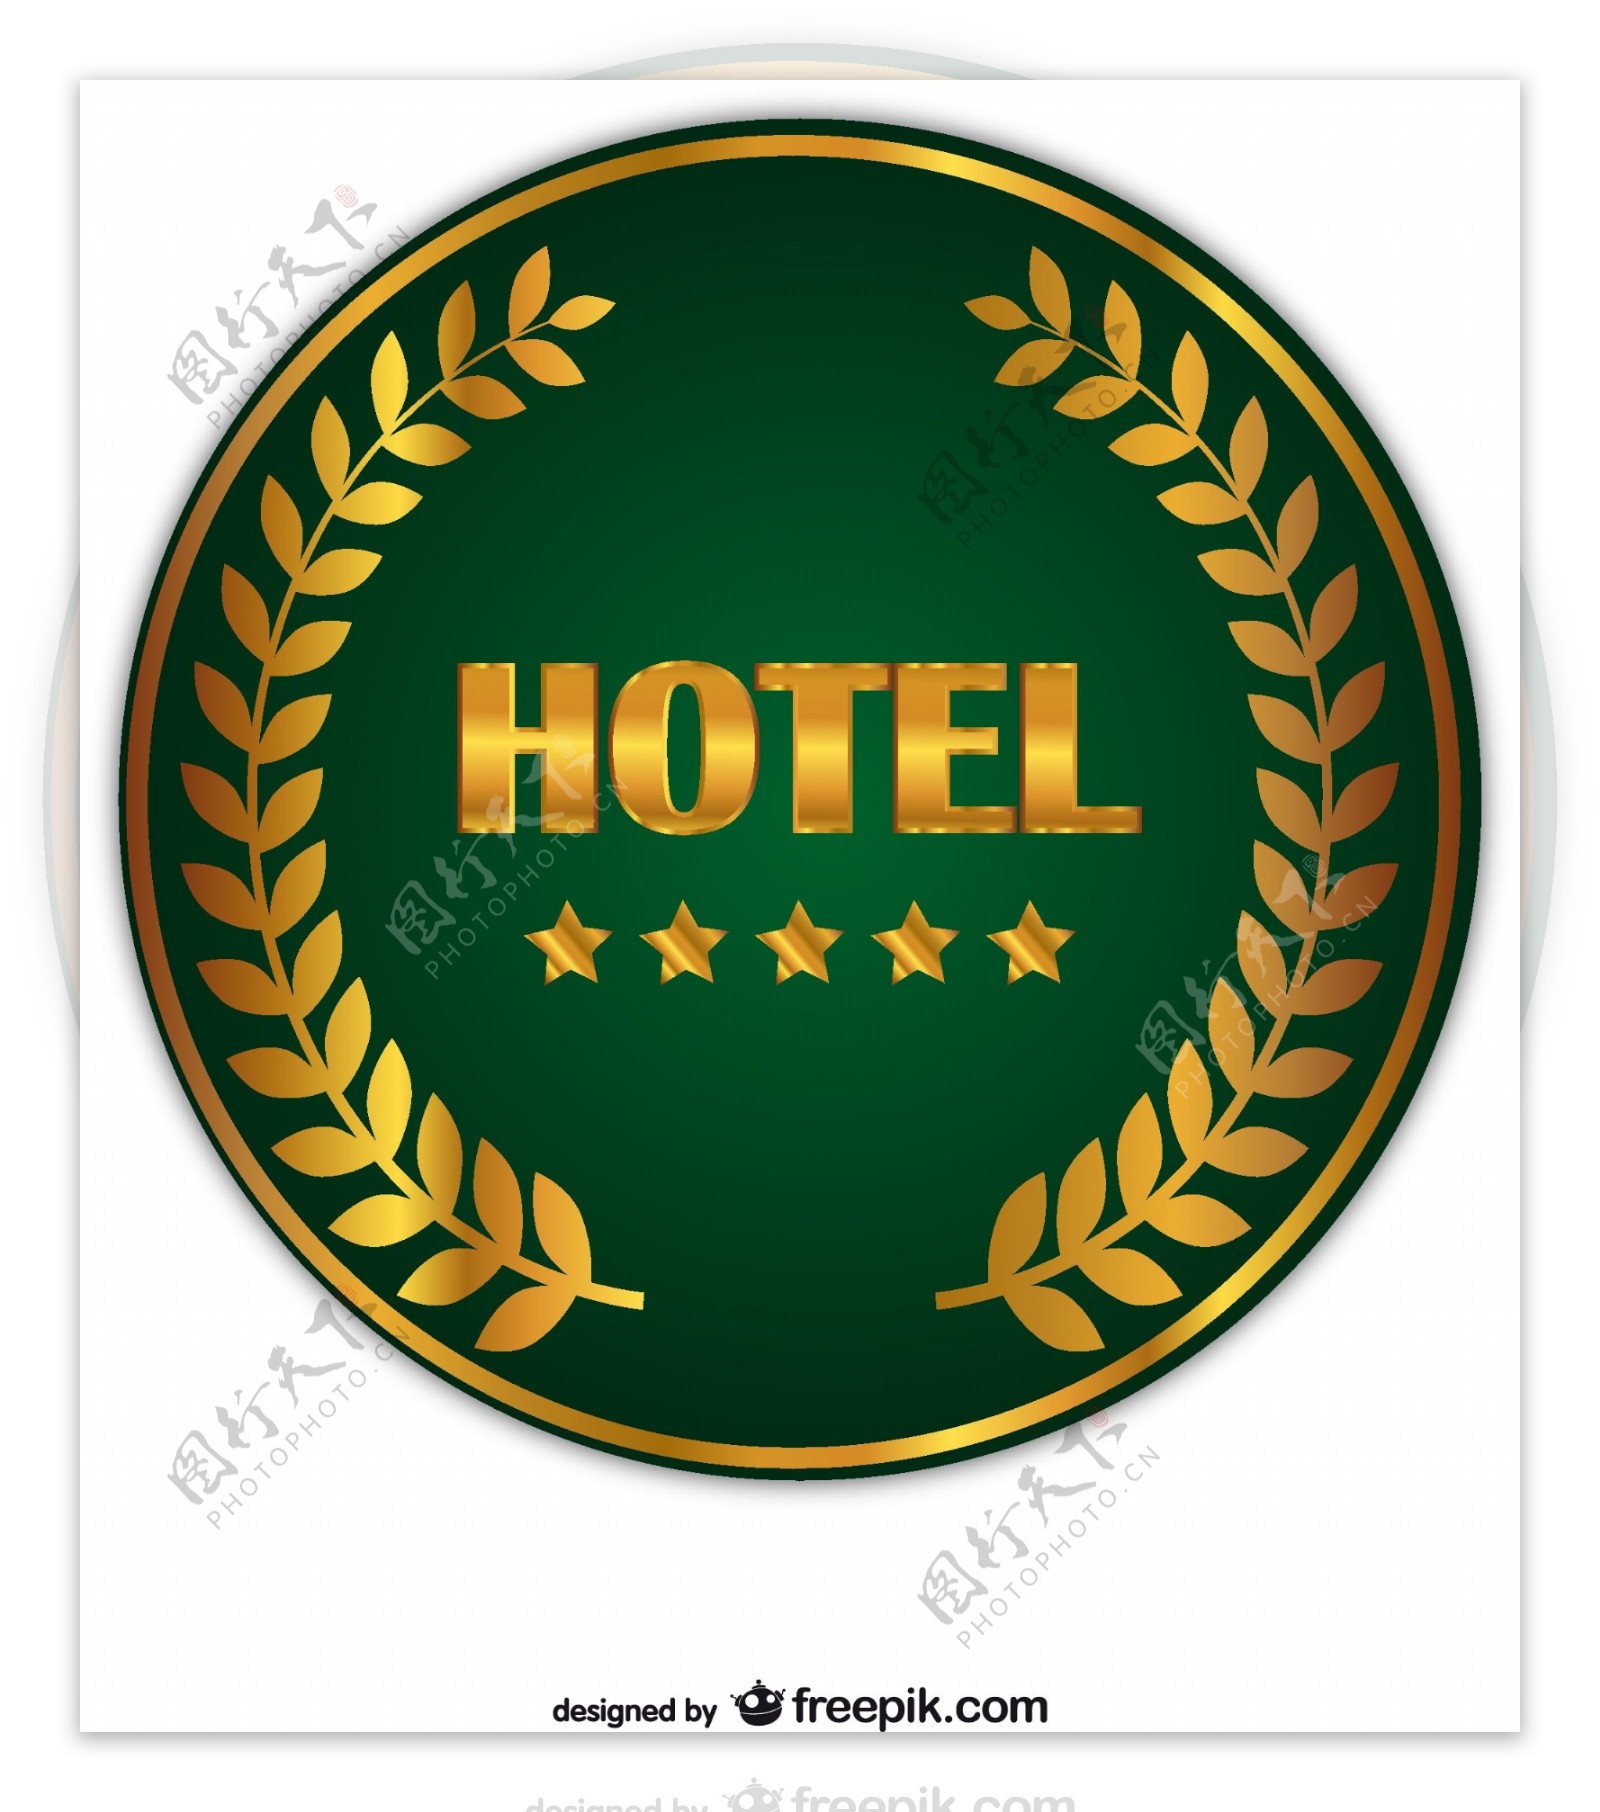 酒店徽章矢量